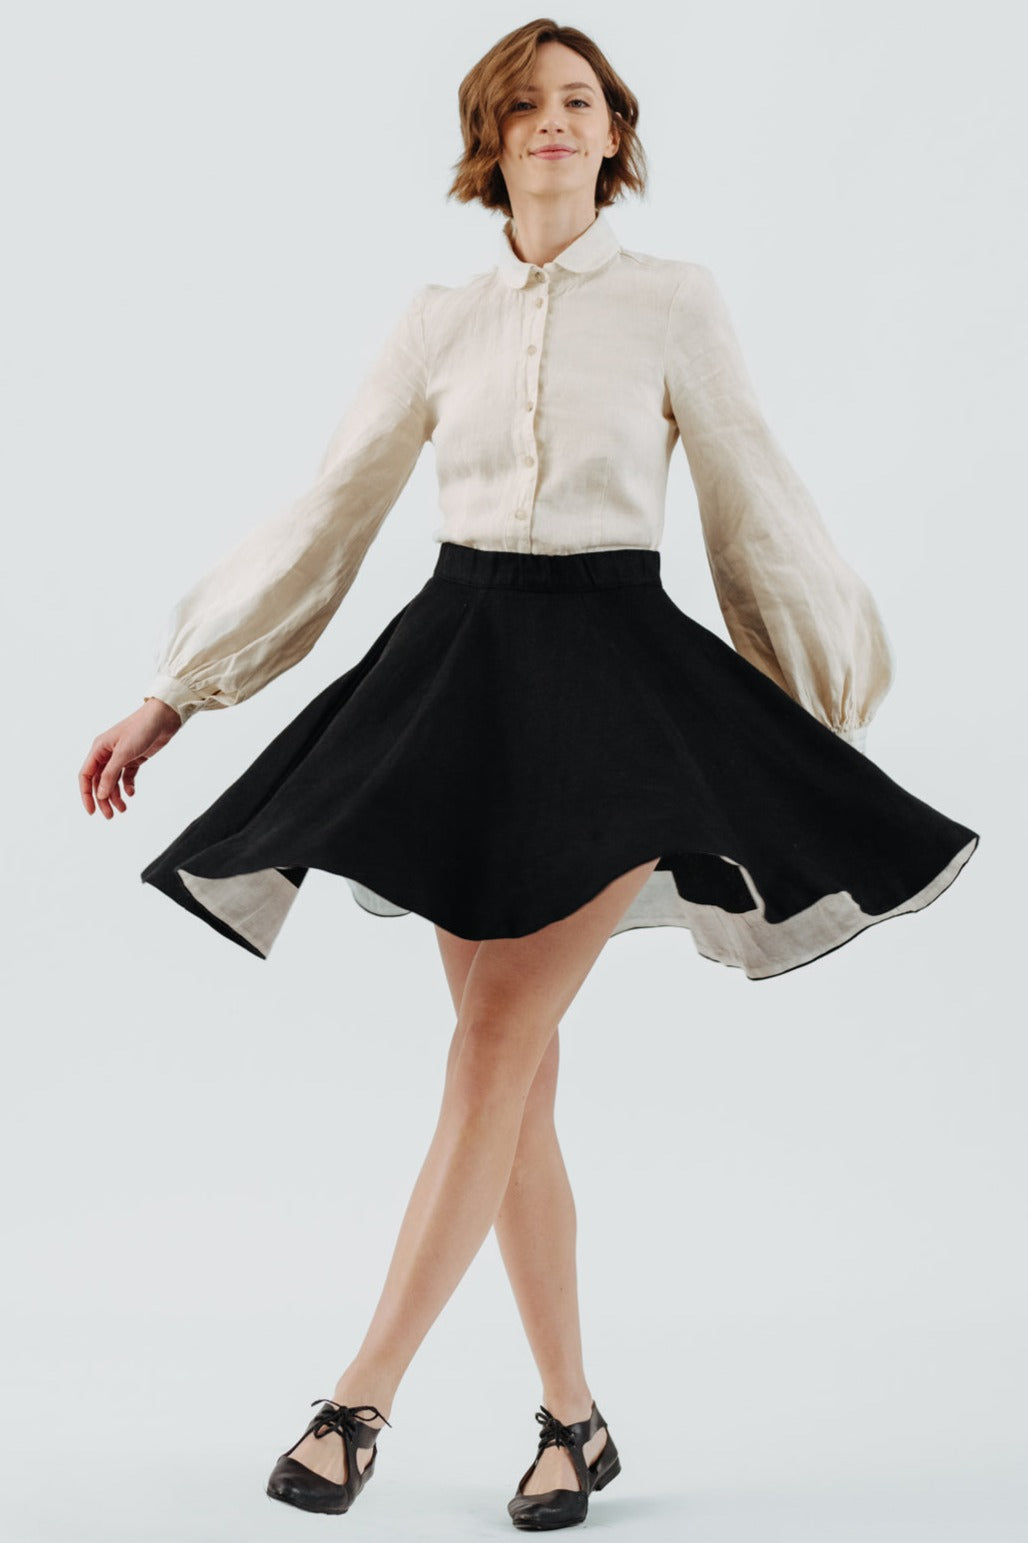 Mini Classic Skirt, Twill Linen, Black Herringbone